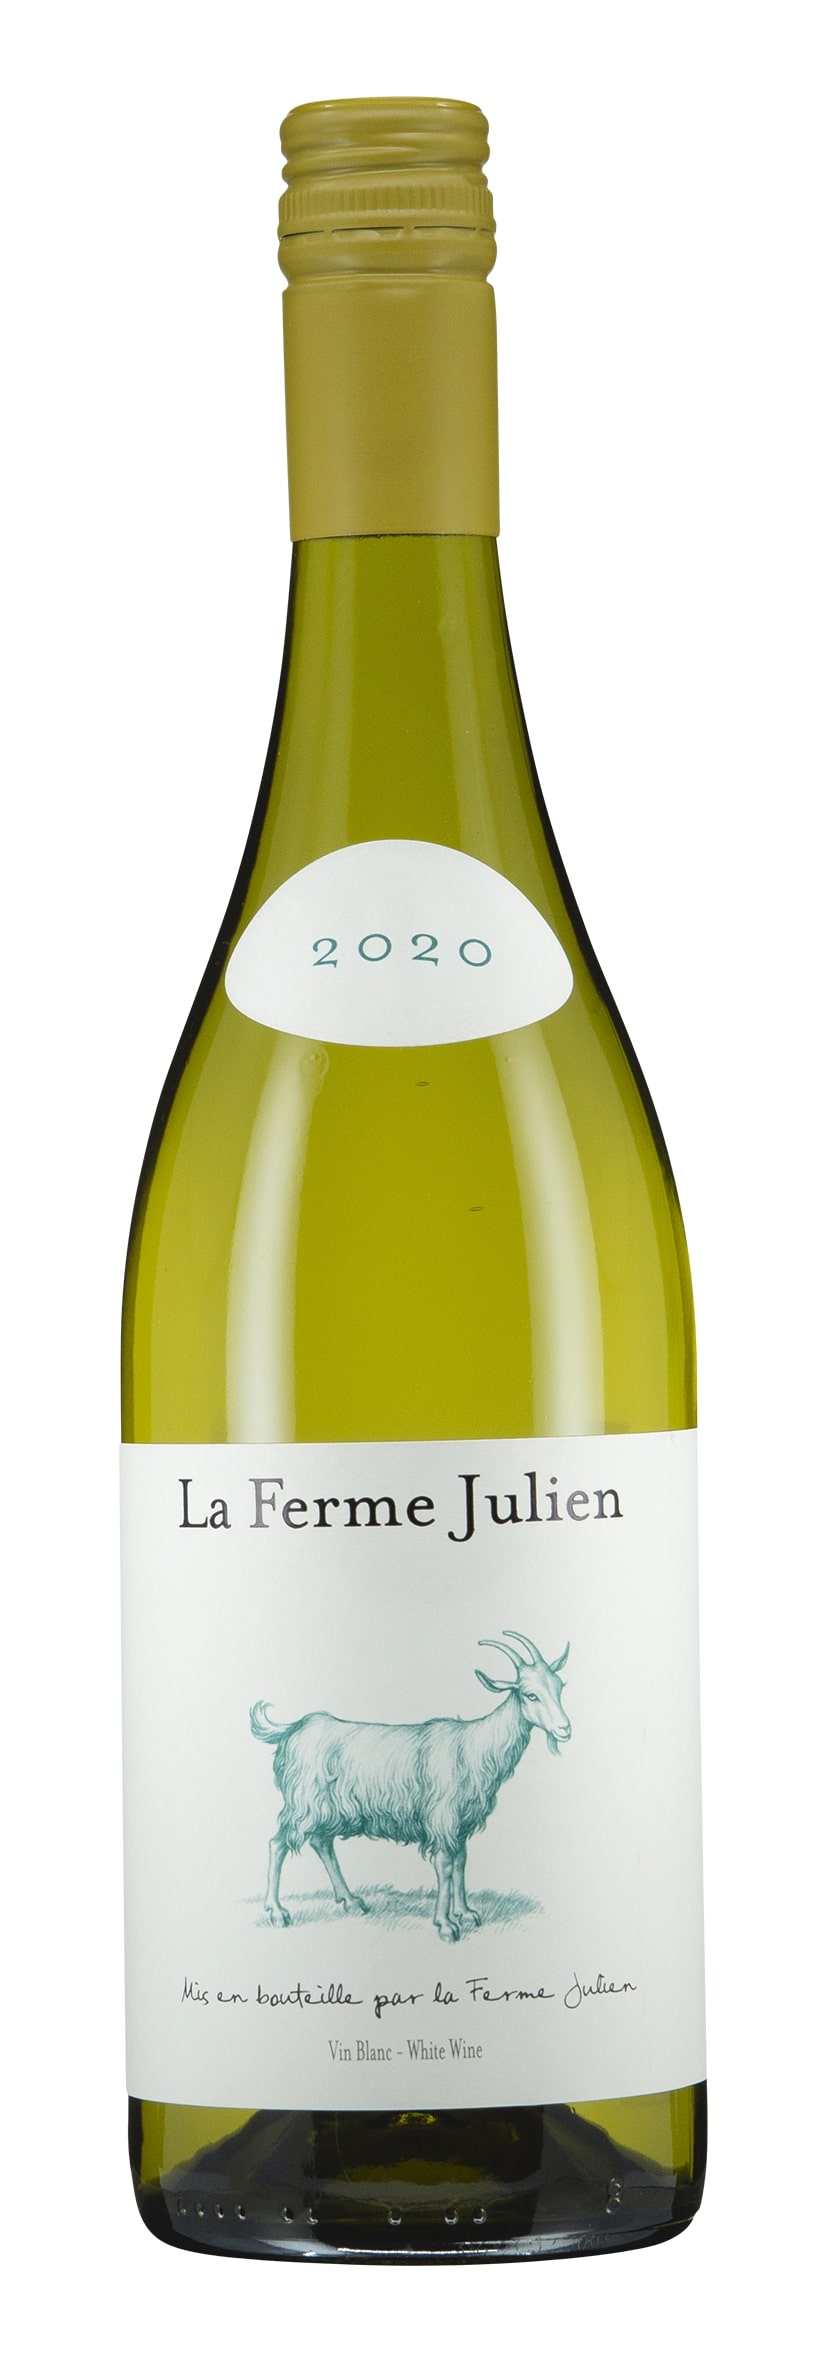 Ventoux AOC Vin Blanc 2020